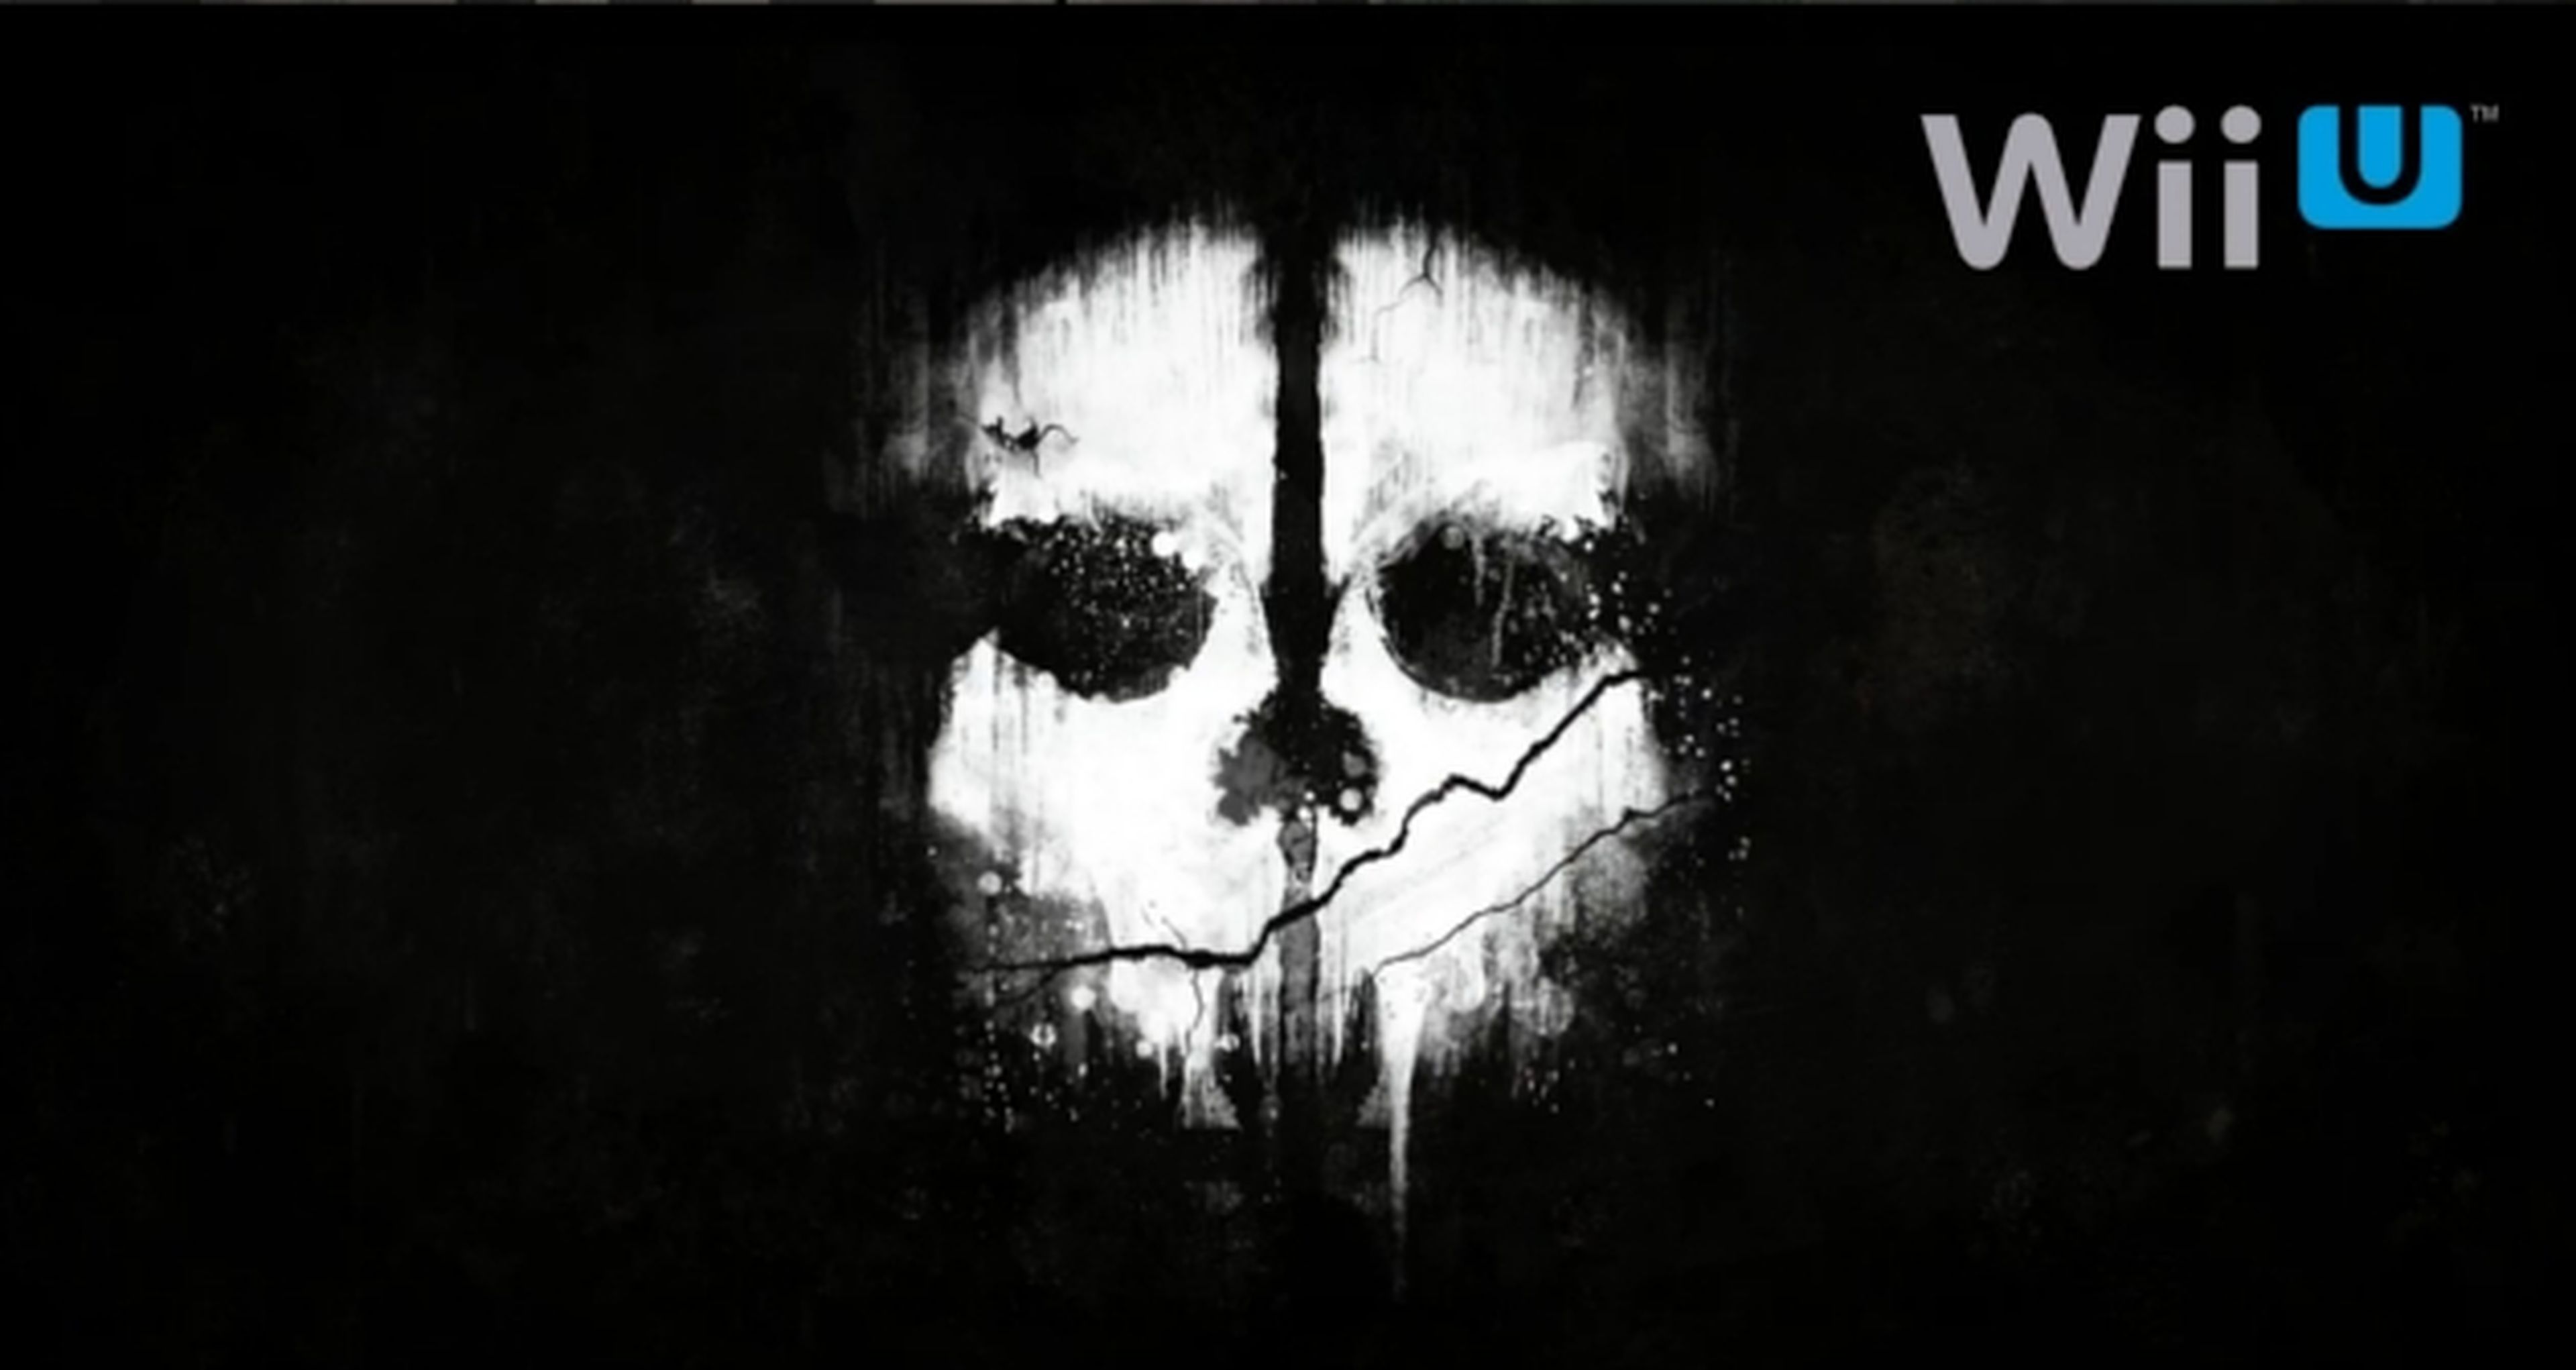 Call of Duty Ghosts luchará en Wii U